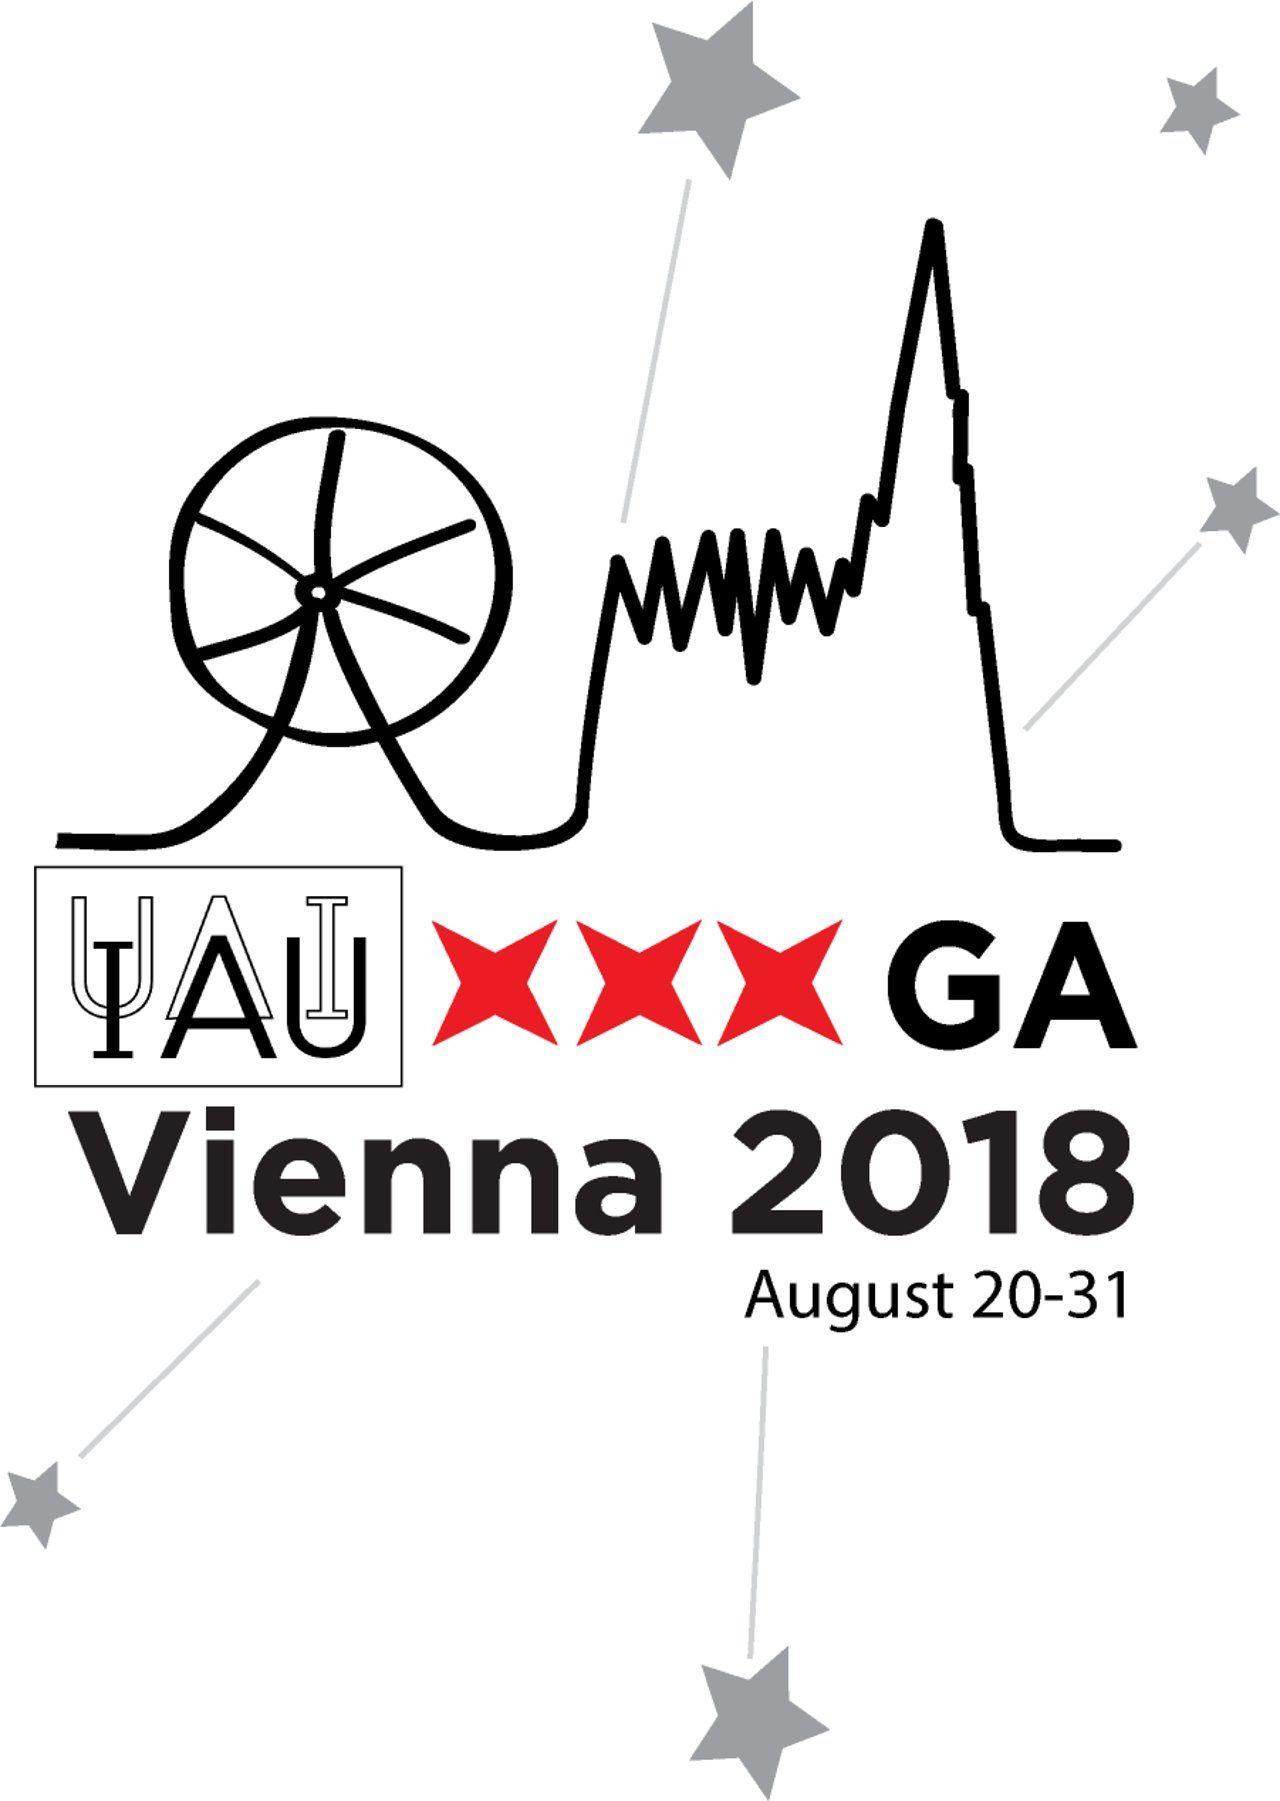 Iau Logo - IAU XXX GA Vienna Logo | IAU